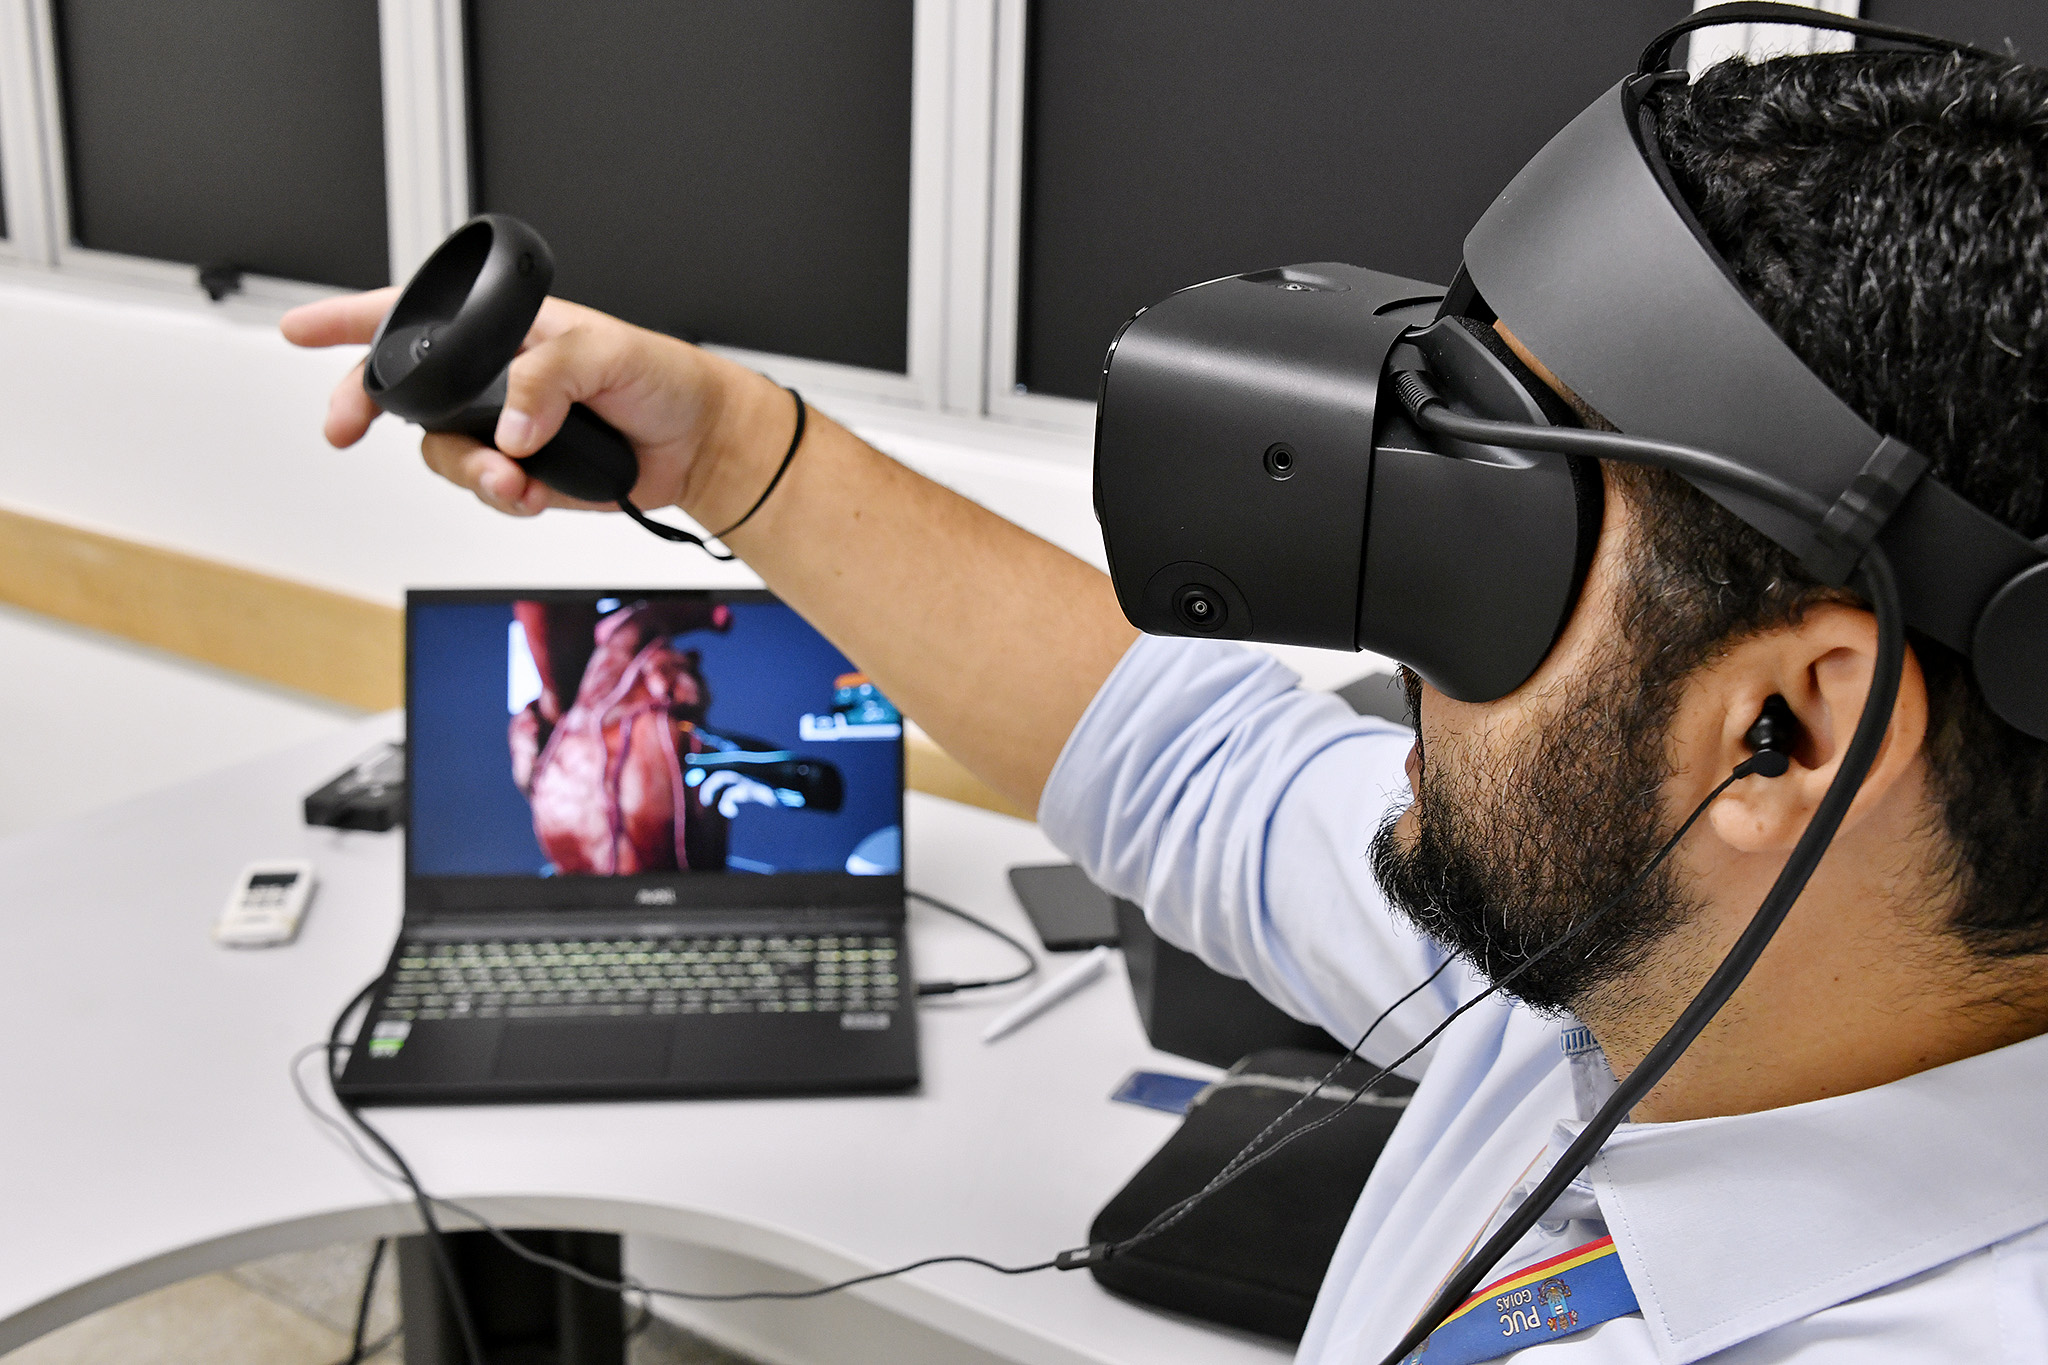 Realidade Virtual aplicada na medicina: áreas e exemplos